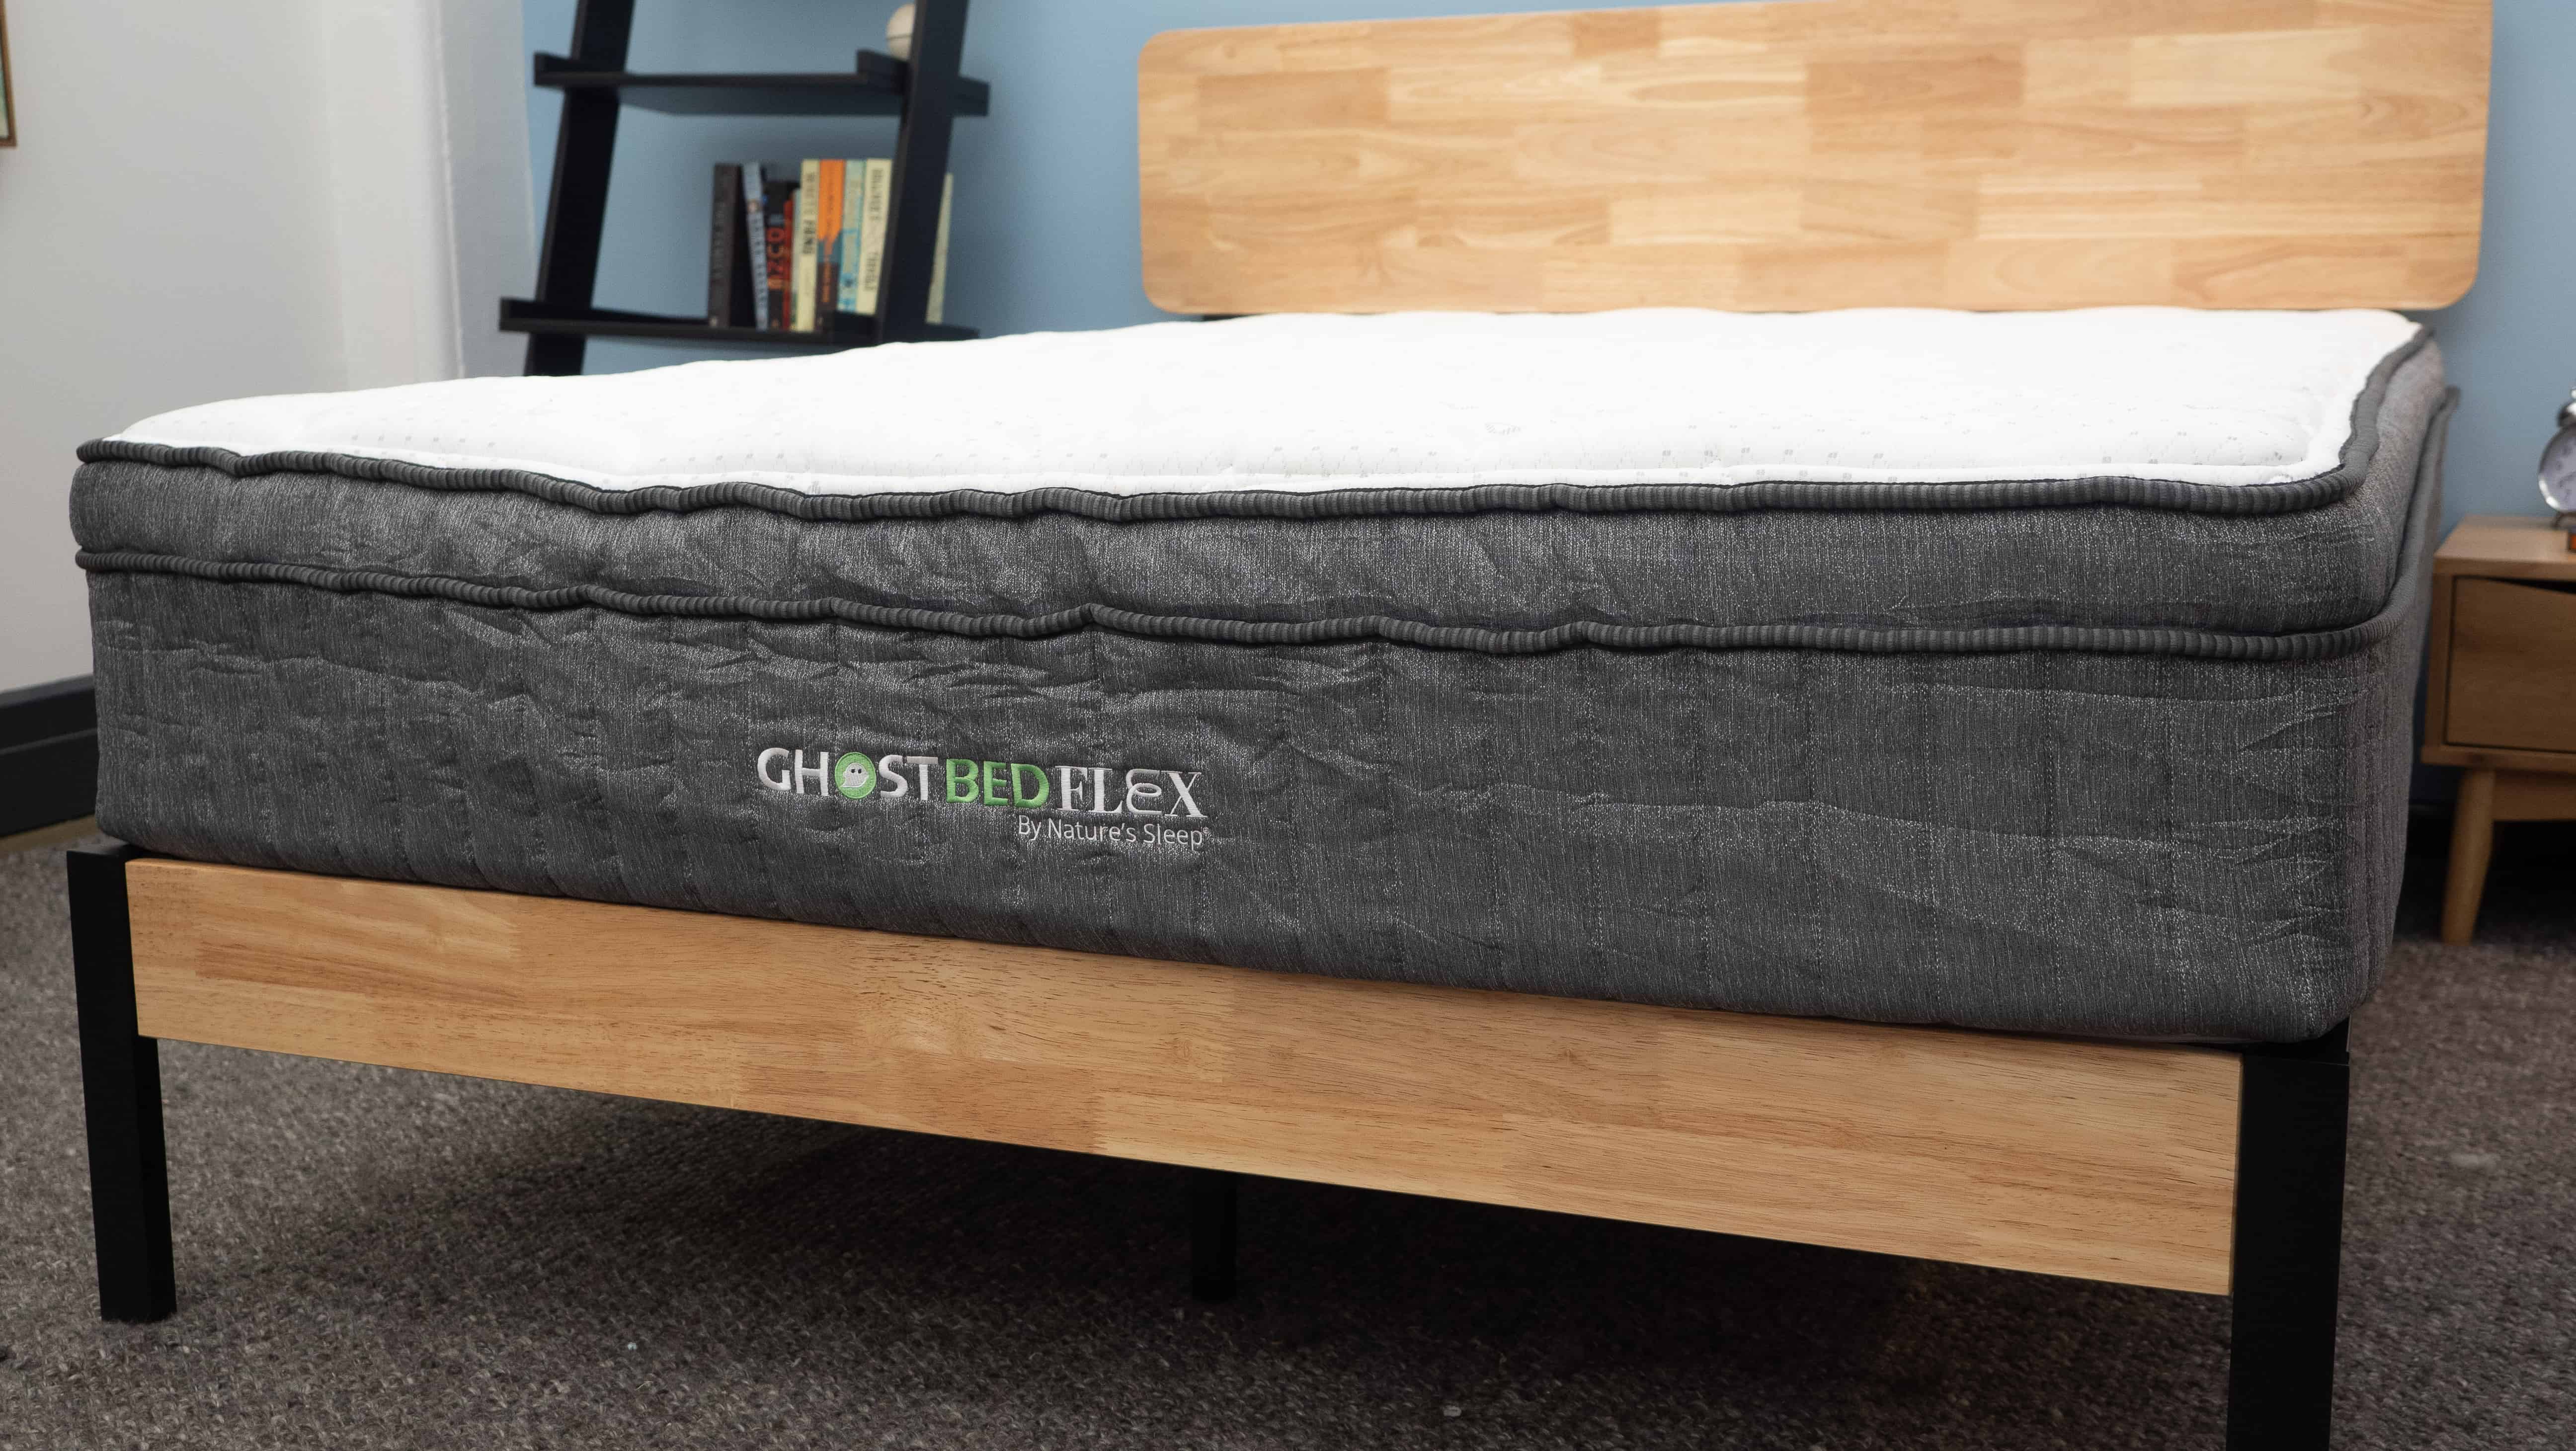 sleep design mattress reviews